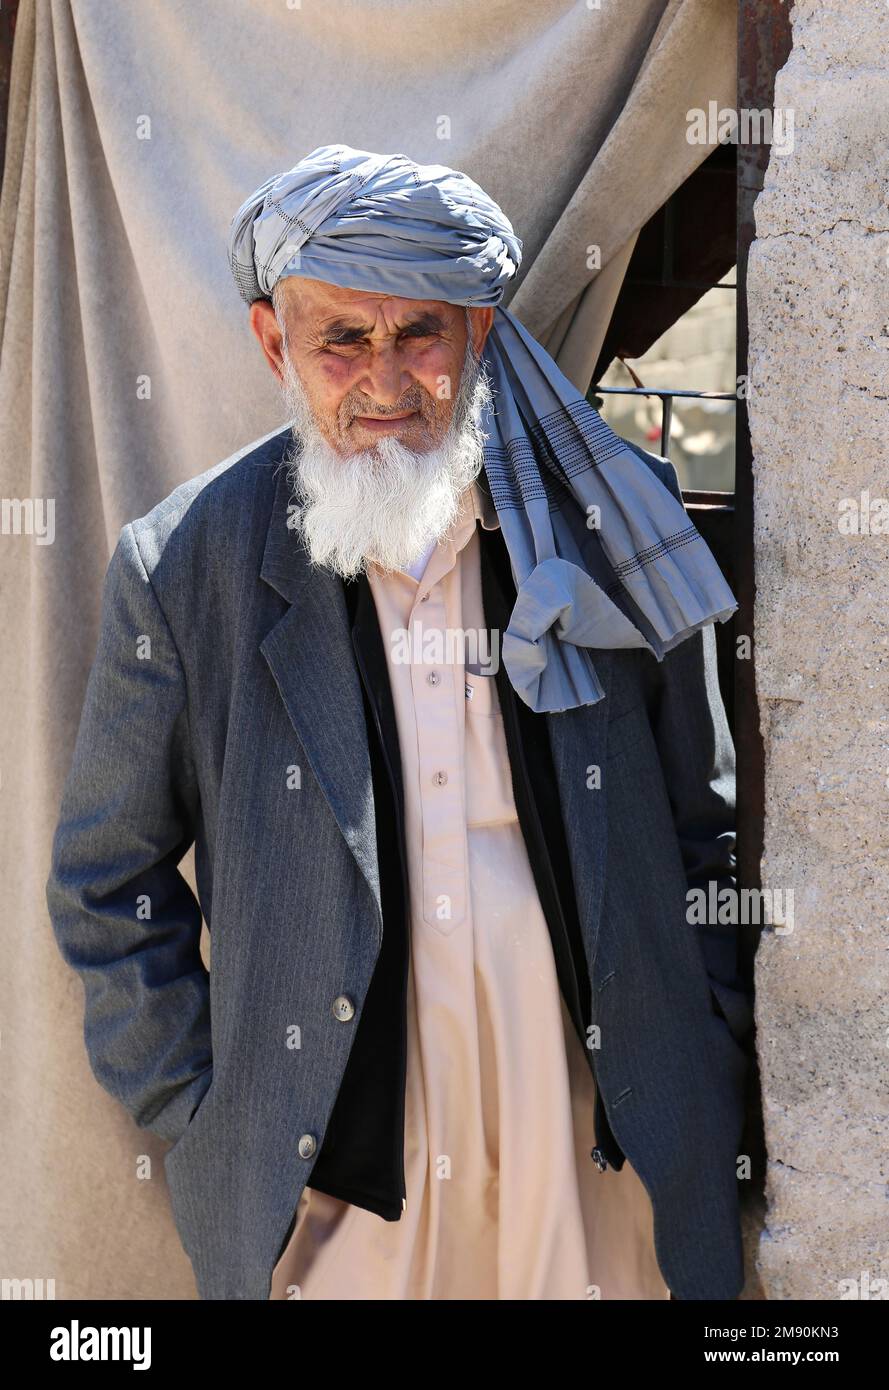 OVAKENT,HATAY,ANTAKYA-JUIN 03:Homme afghan non identifié avec une longue barbe debout devant sa maison.03 juin,2017 dans Ovakent,Hatay,Antakya,Turquie Banque D'Images